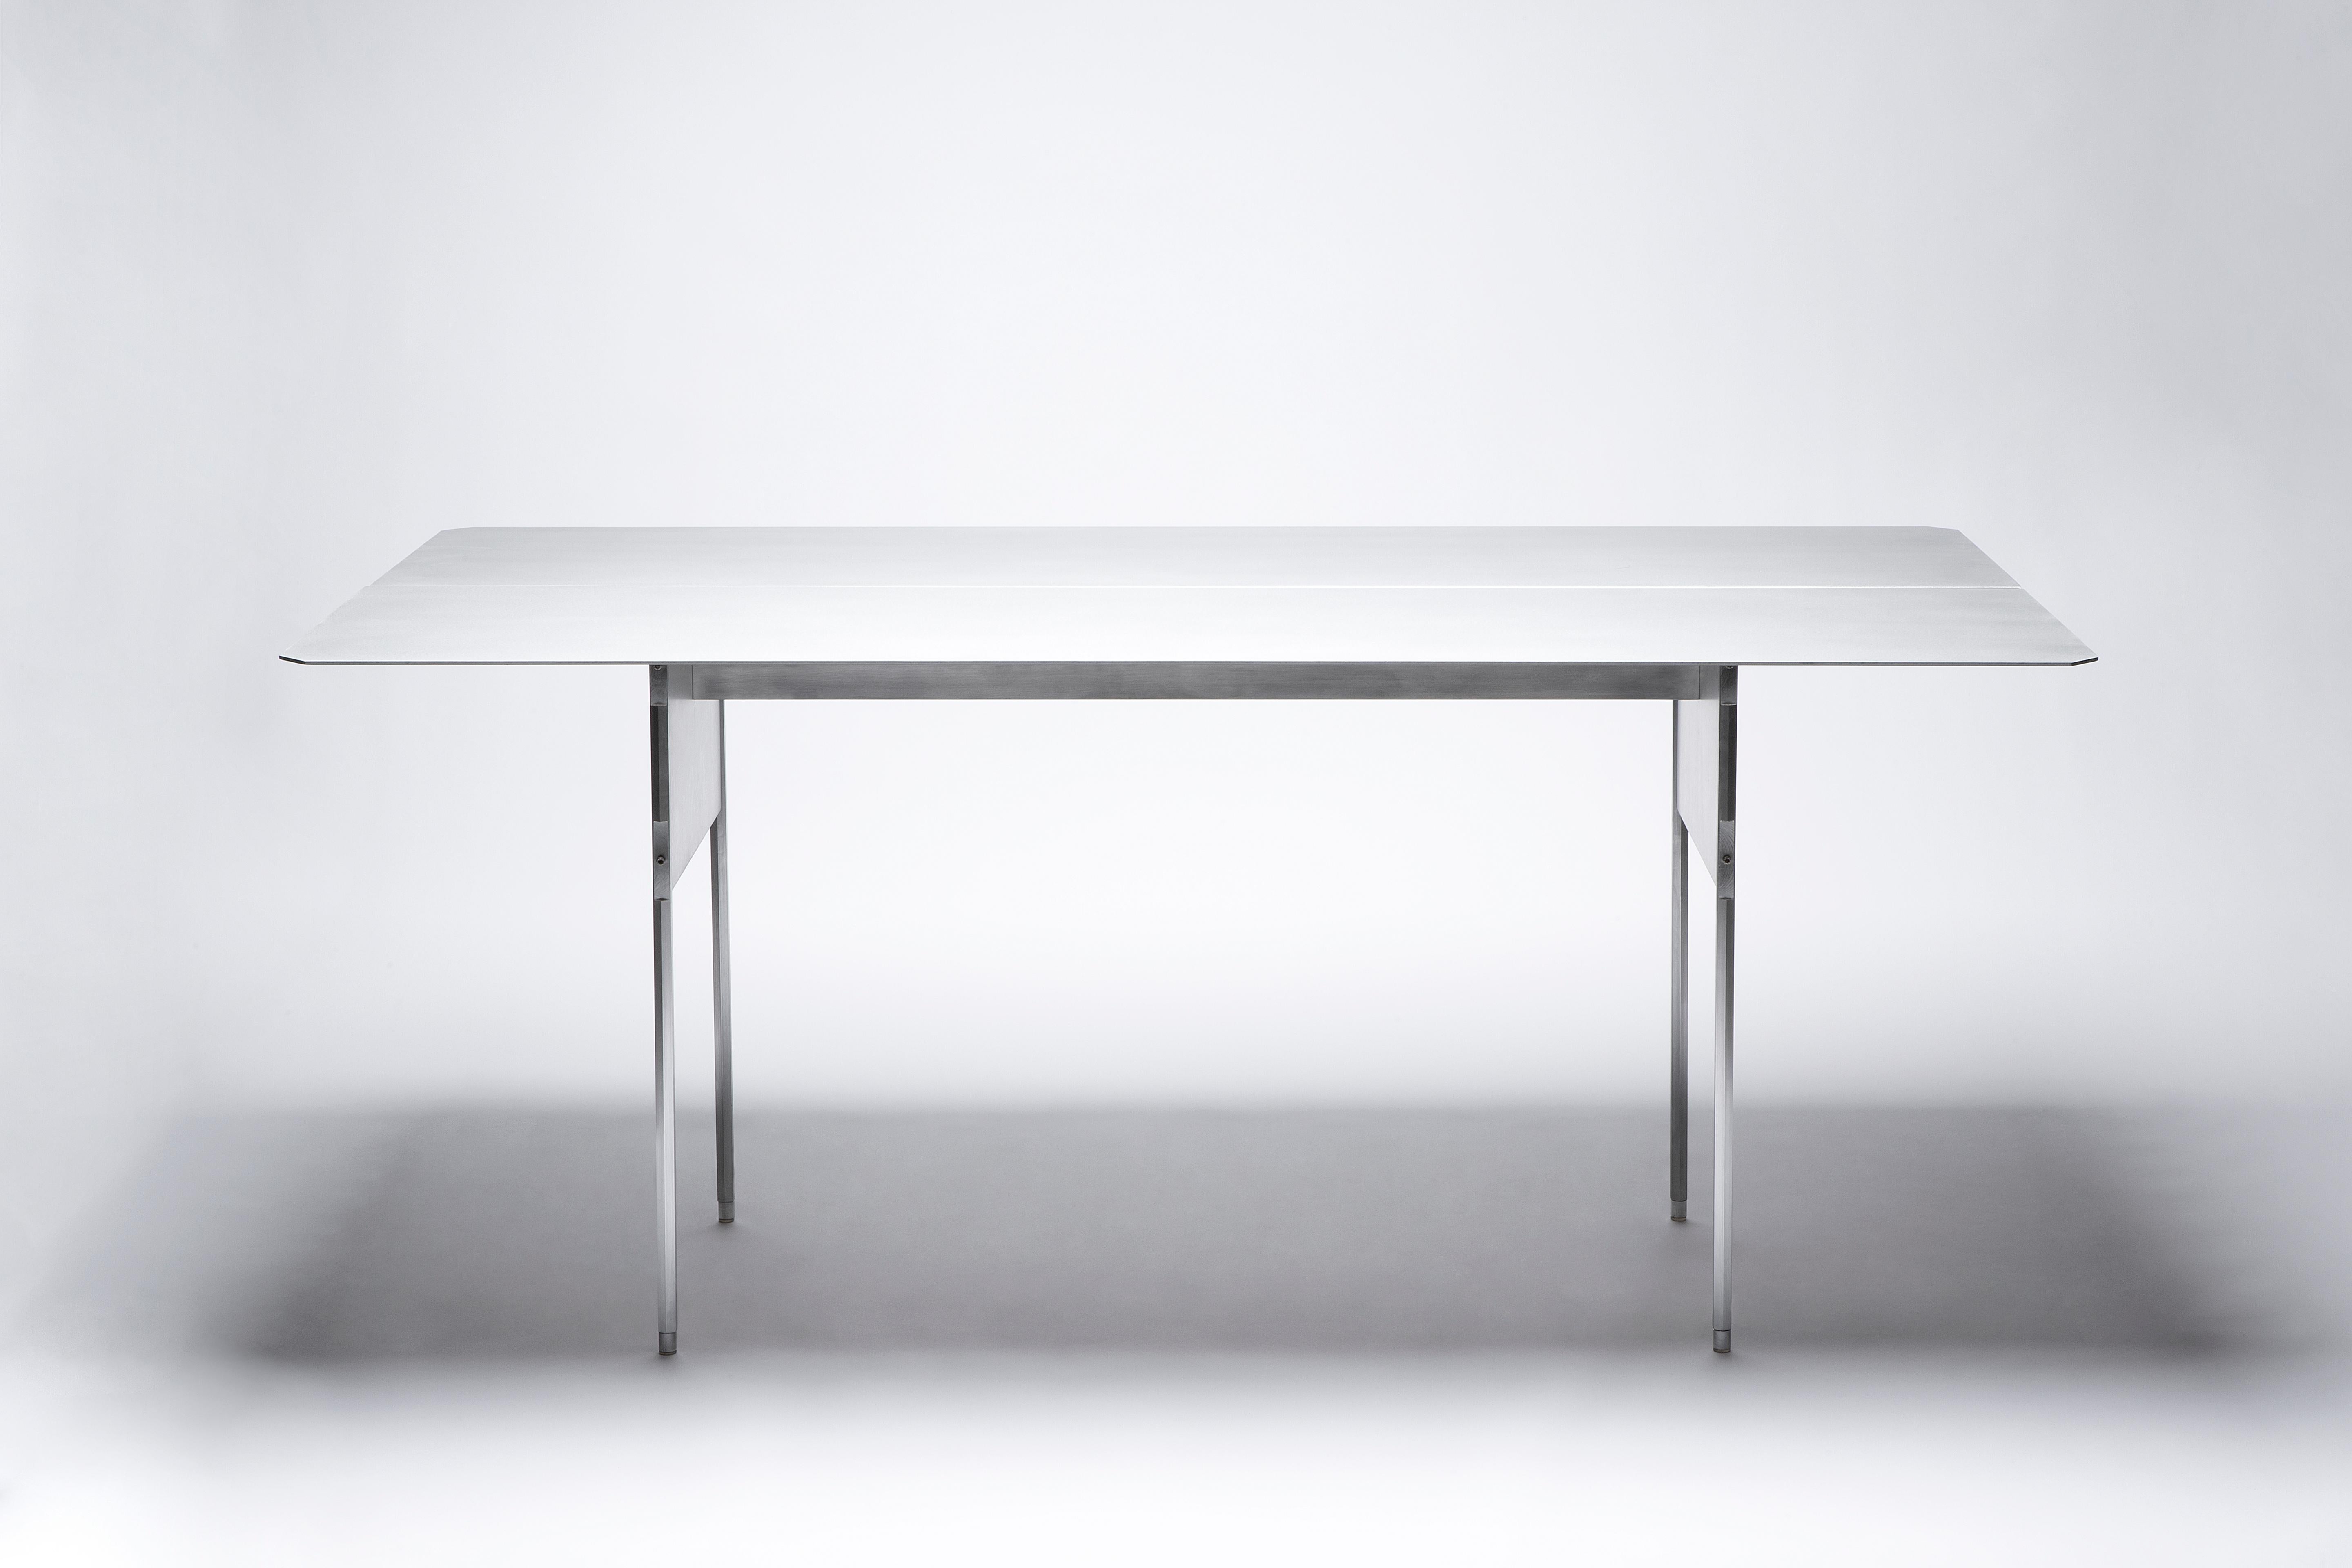 Carbonari Tisch von Scattered Disc Objects + Stefano Marongiu
MATERIALIEN: Natürliches Aluminium-Finish: Er besteht aus einer antikorodalen Aluminiumlegierung, nur die Beine sind aus ergalem Aluminium. Die Oberflächen werden von Hand gebürstet und